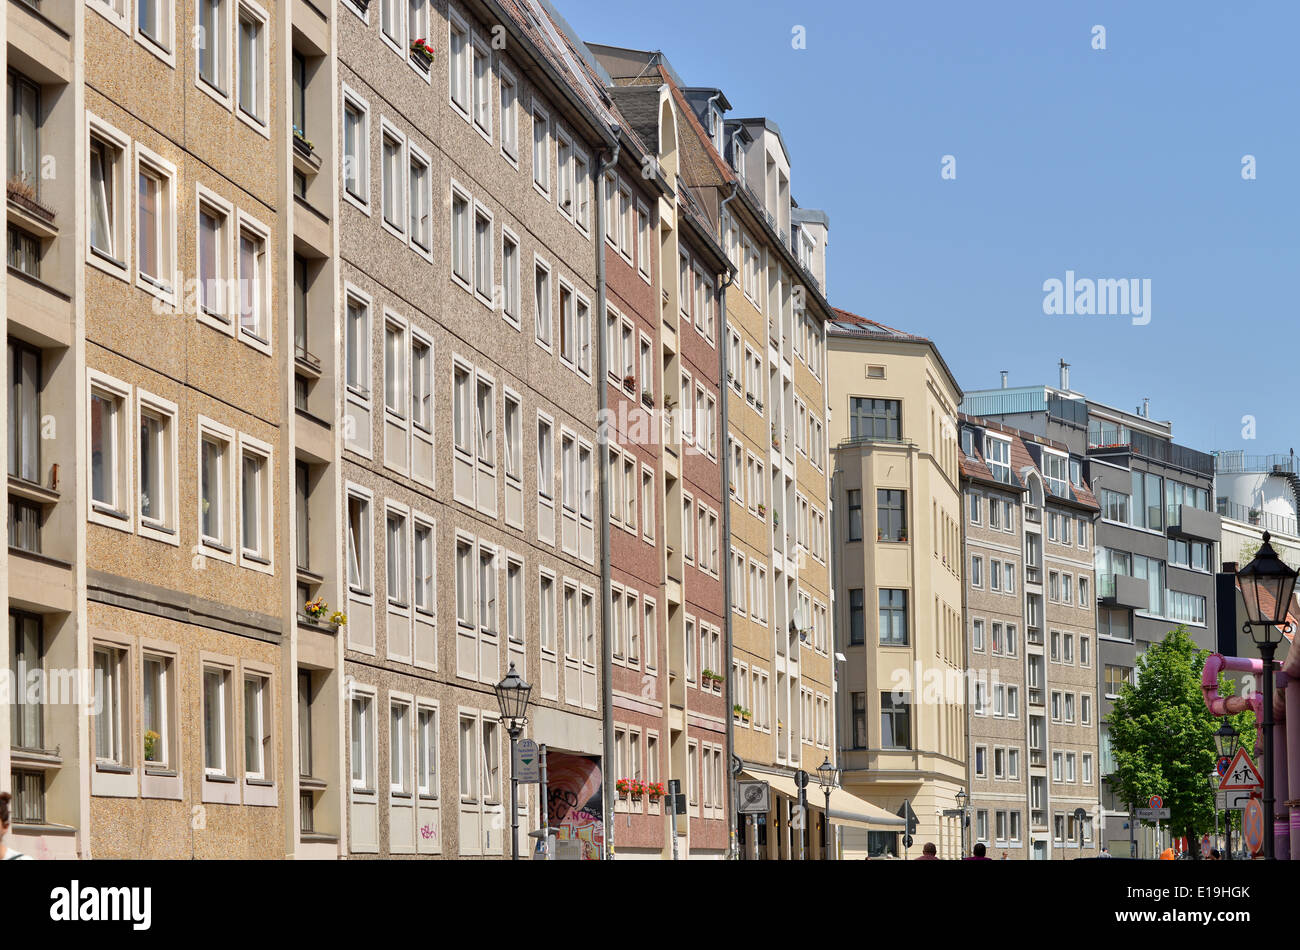 Altbauten. Fassaden, Linienstrasse, Mitte, Berlin, Deutschland Stock Photo